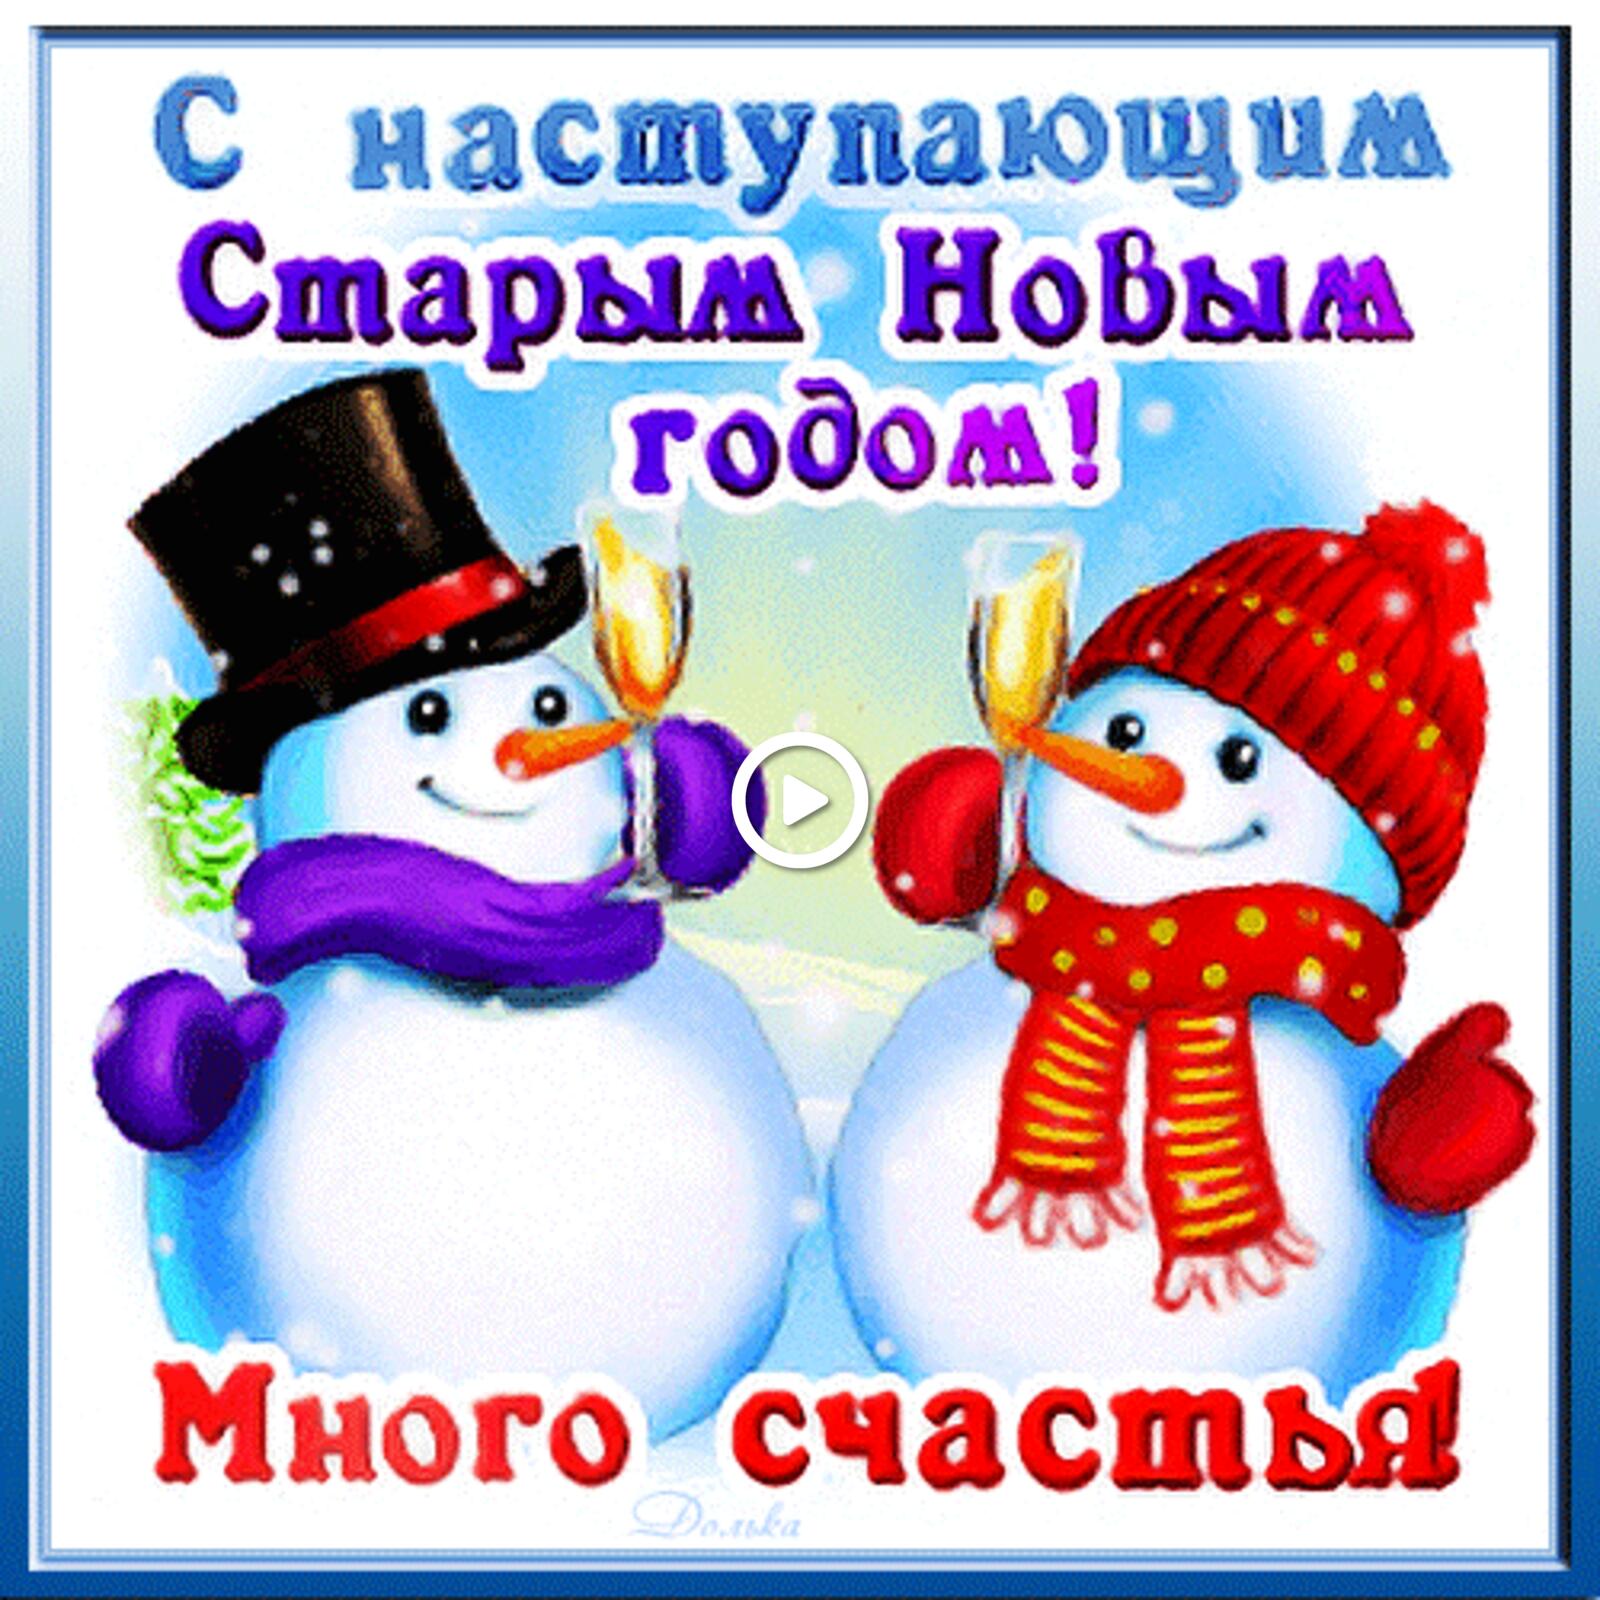 一张以新年 雪人 新年快乐为主题的明信片